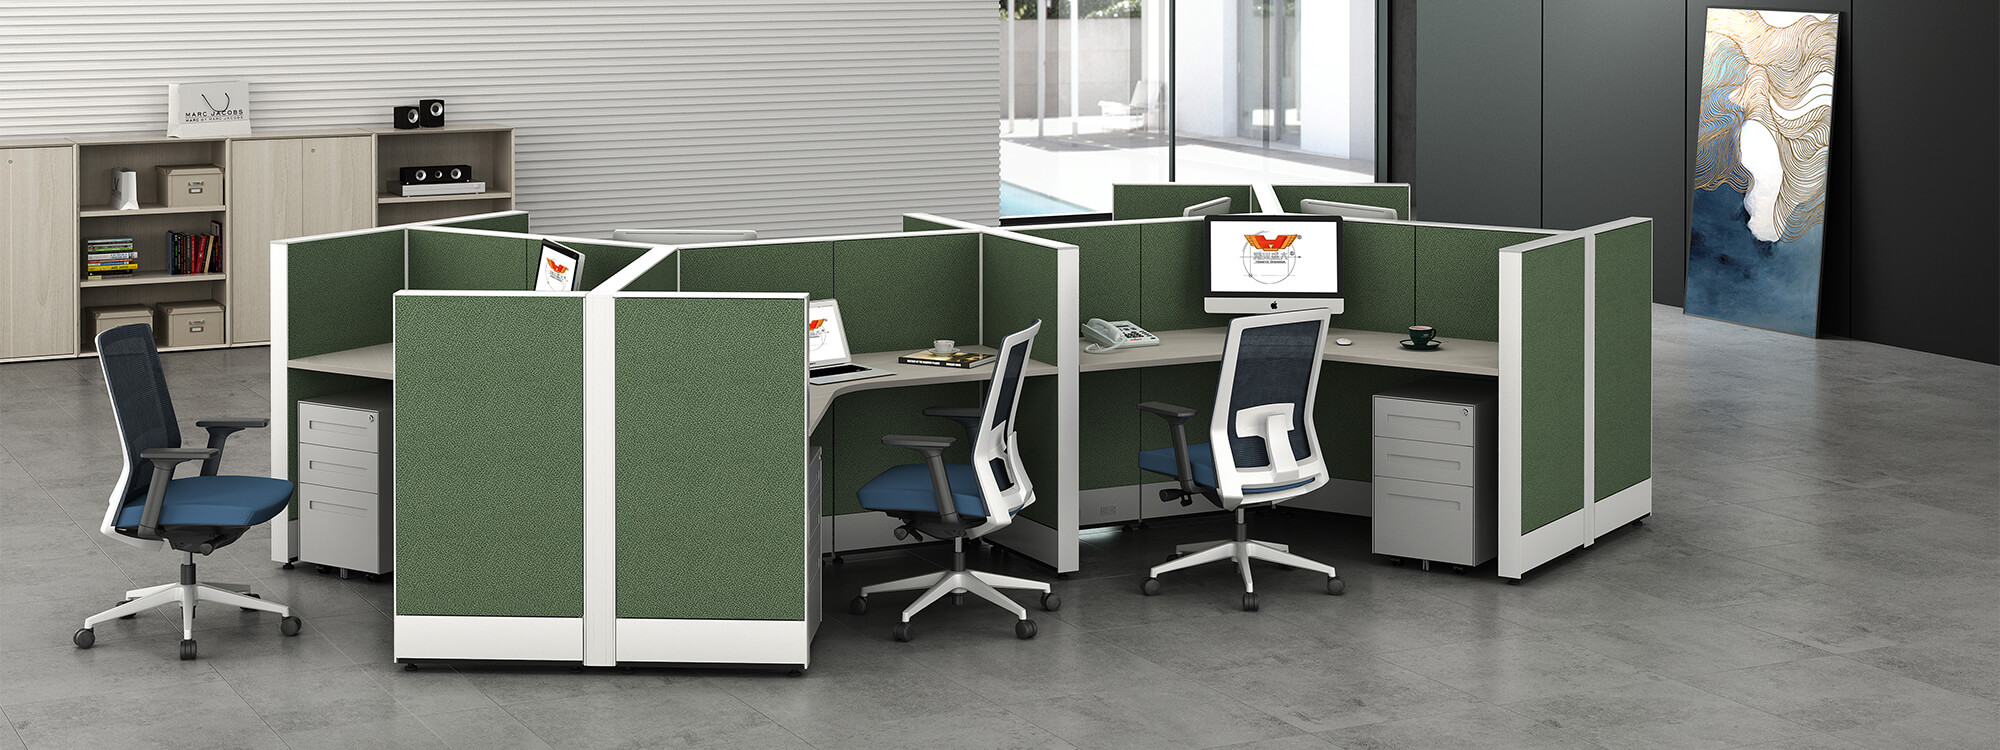 Les cabines multi-personnes en vert accueillent chaque employé avec un espace séparé qui réduit les distractions et augmente la productivité. 